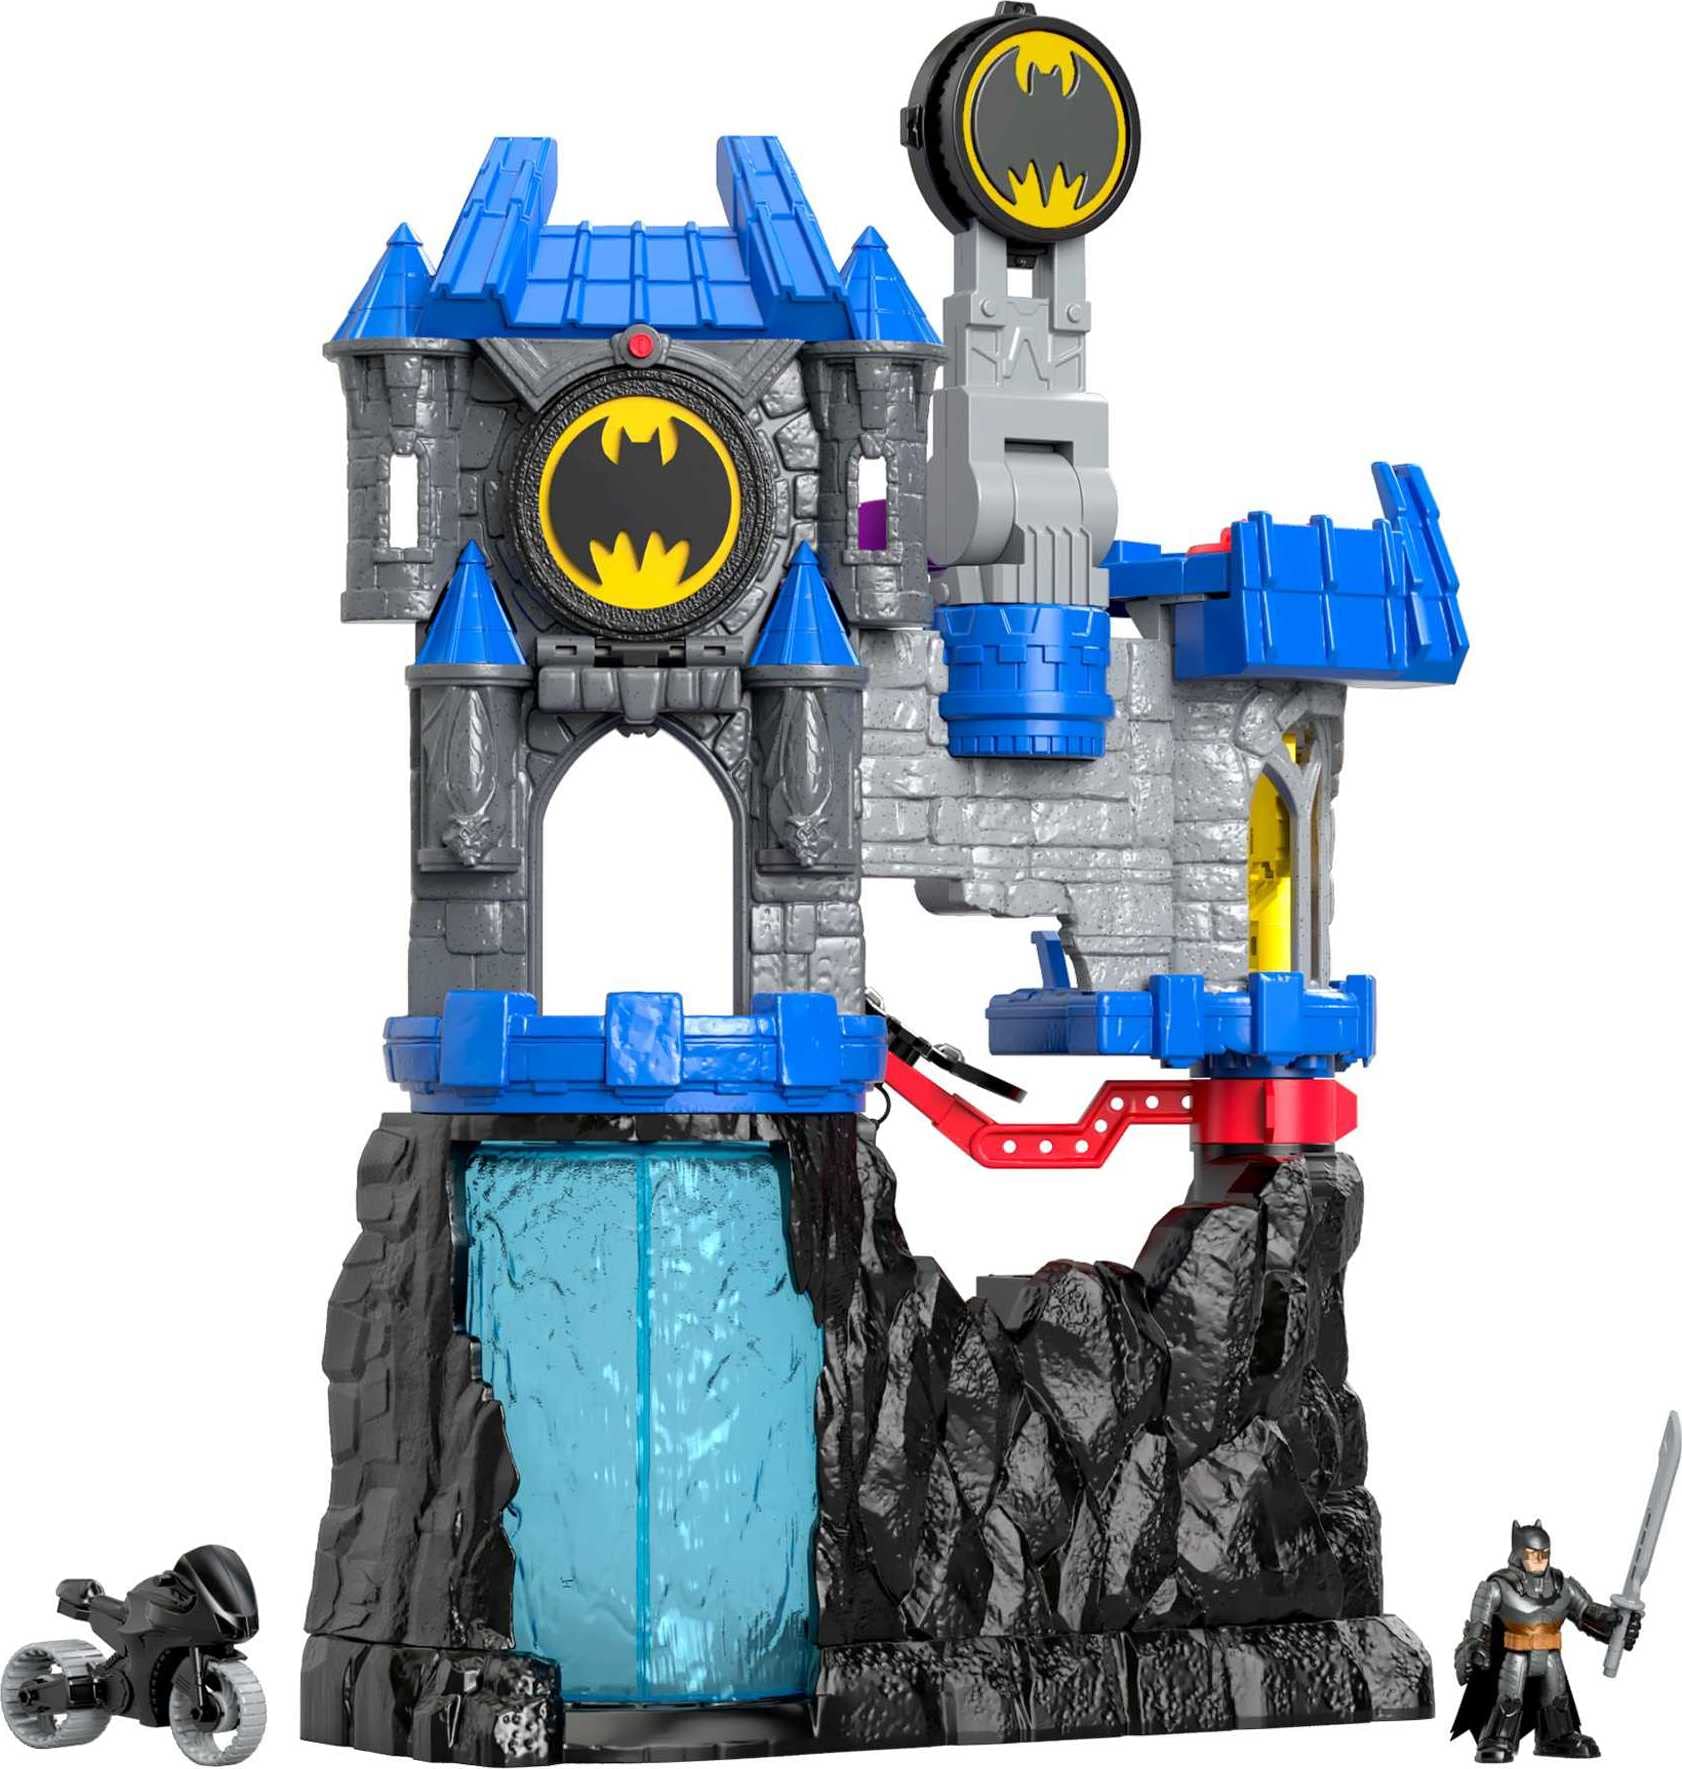 Imaginext DC Super Friends Batman Toy, Wayne Manor Batcave Playset with Batman Figure & Accessories (Amazon Exclusive)